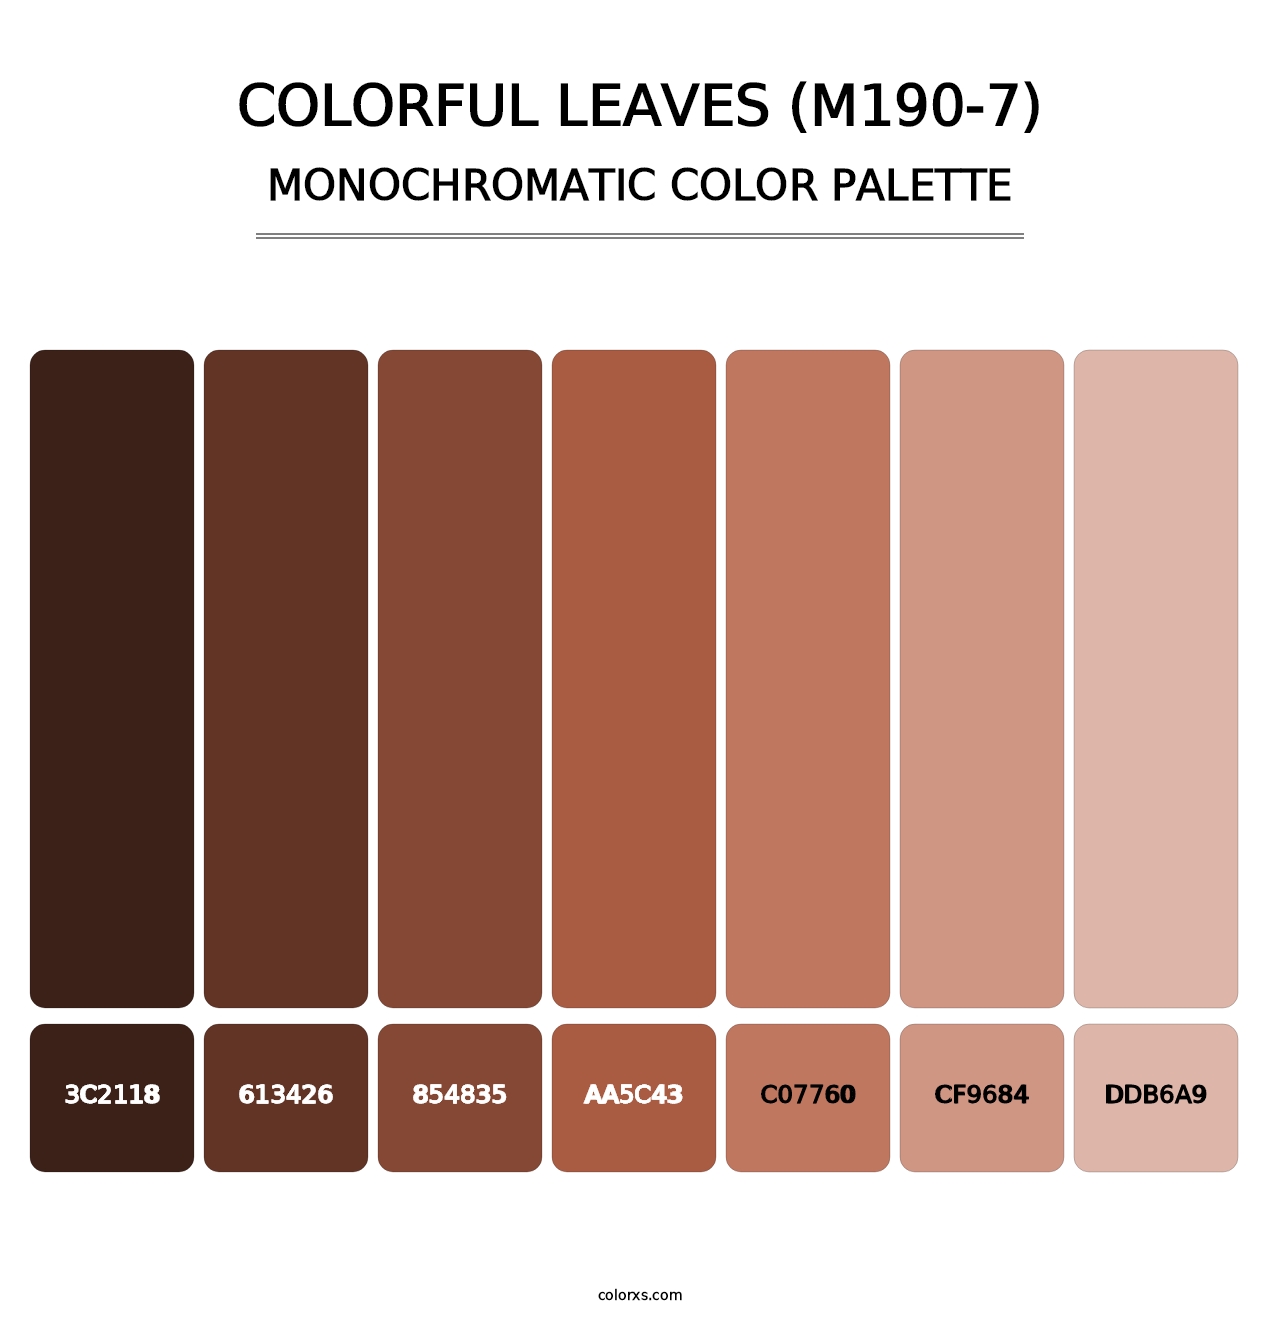 Colorful Leaves (M190-7) - Monochromatic Color Palette